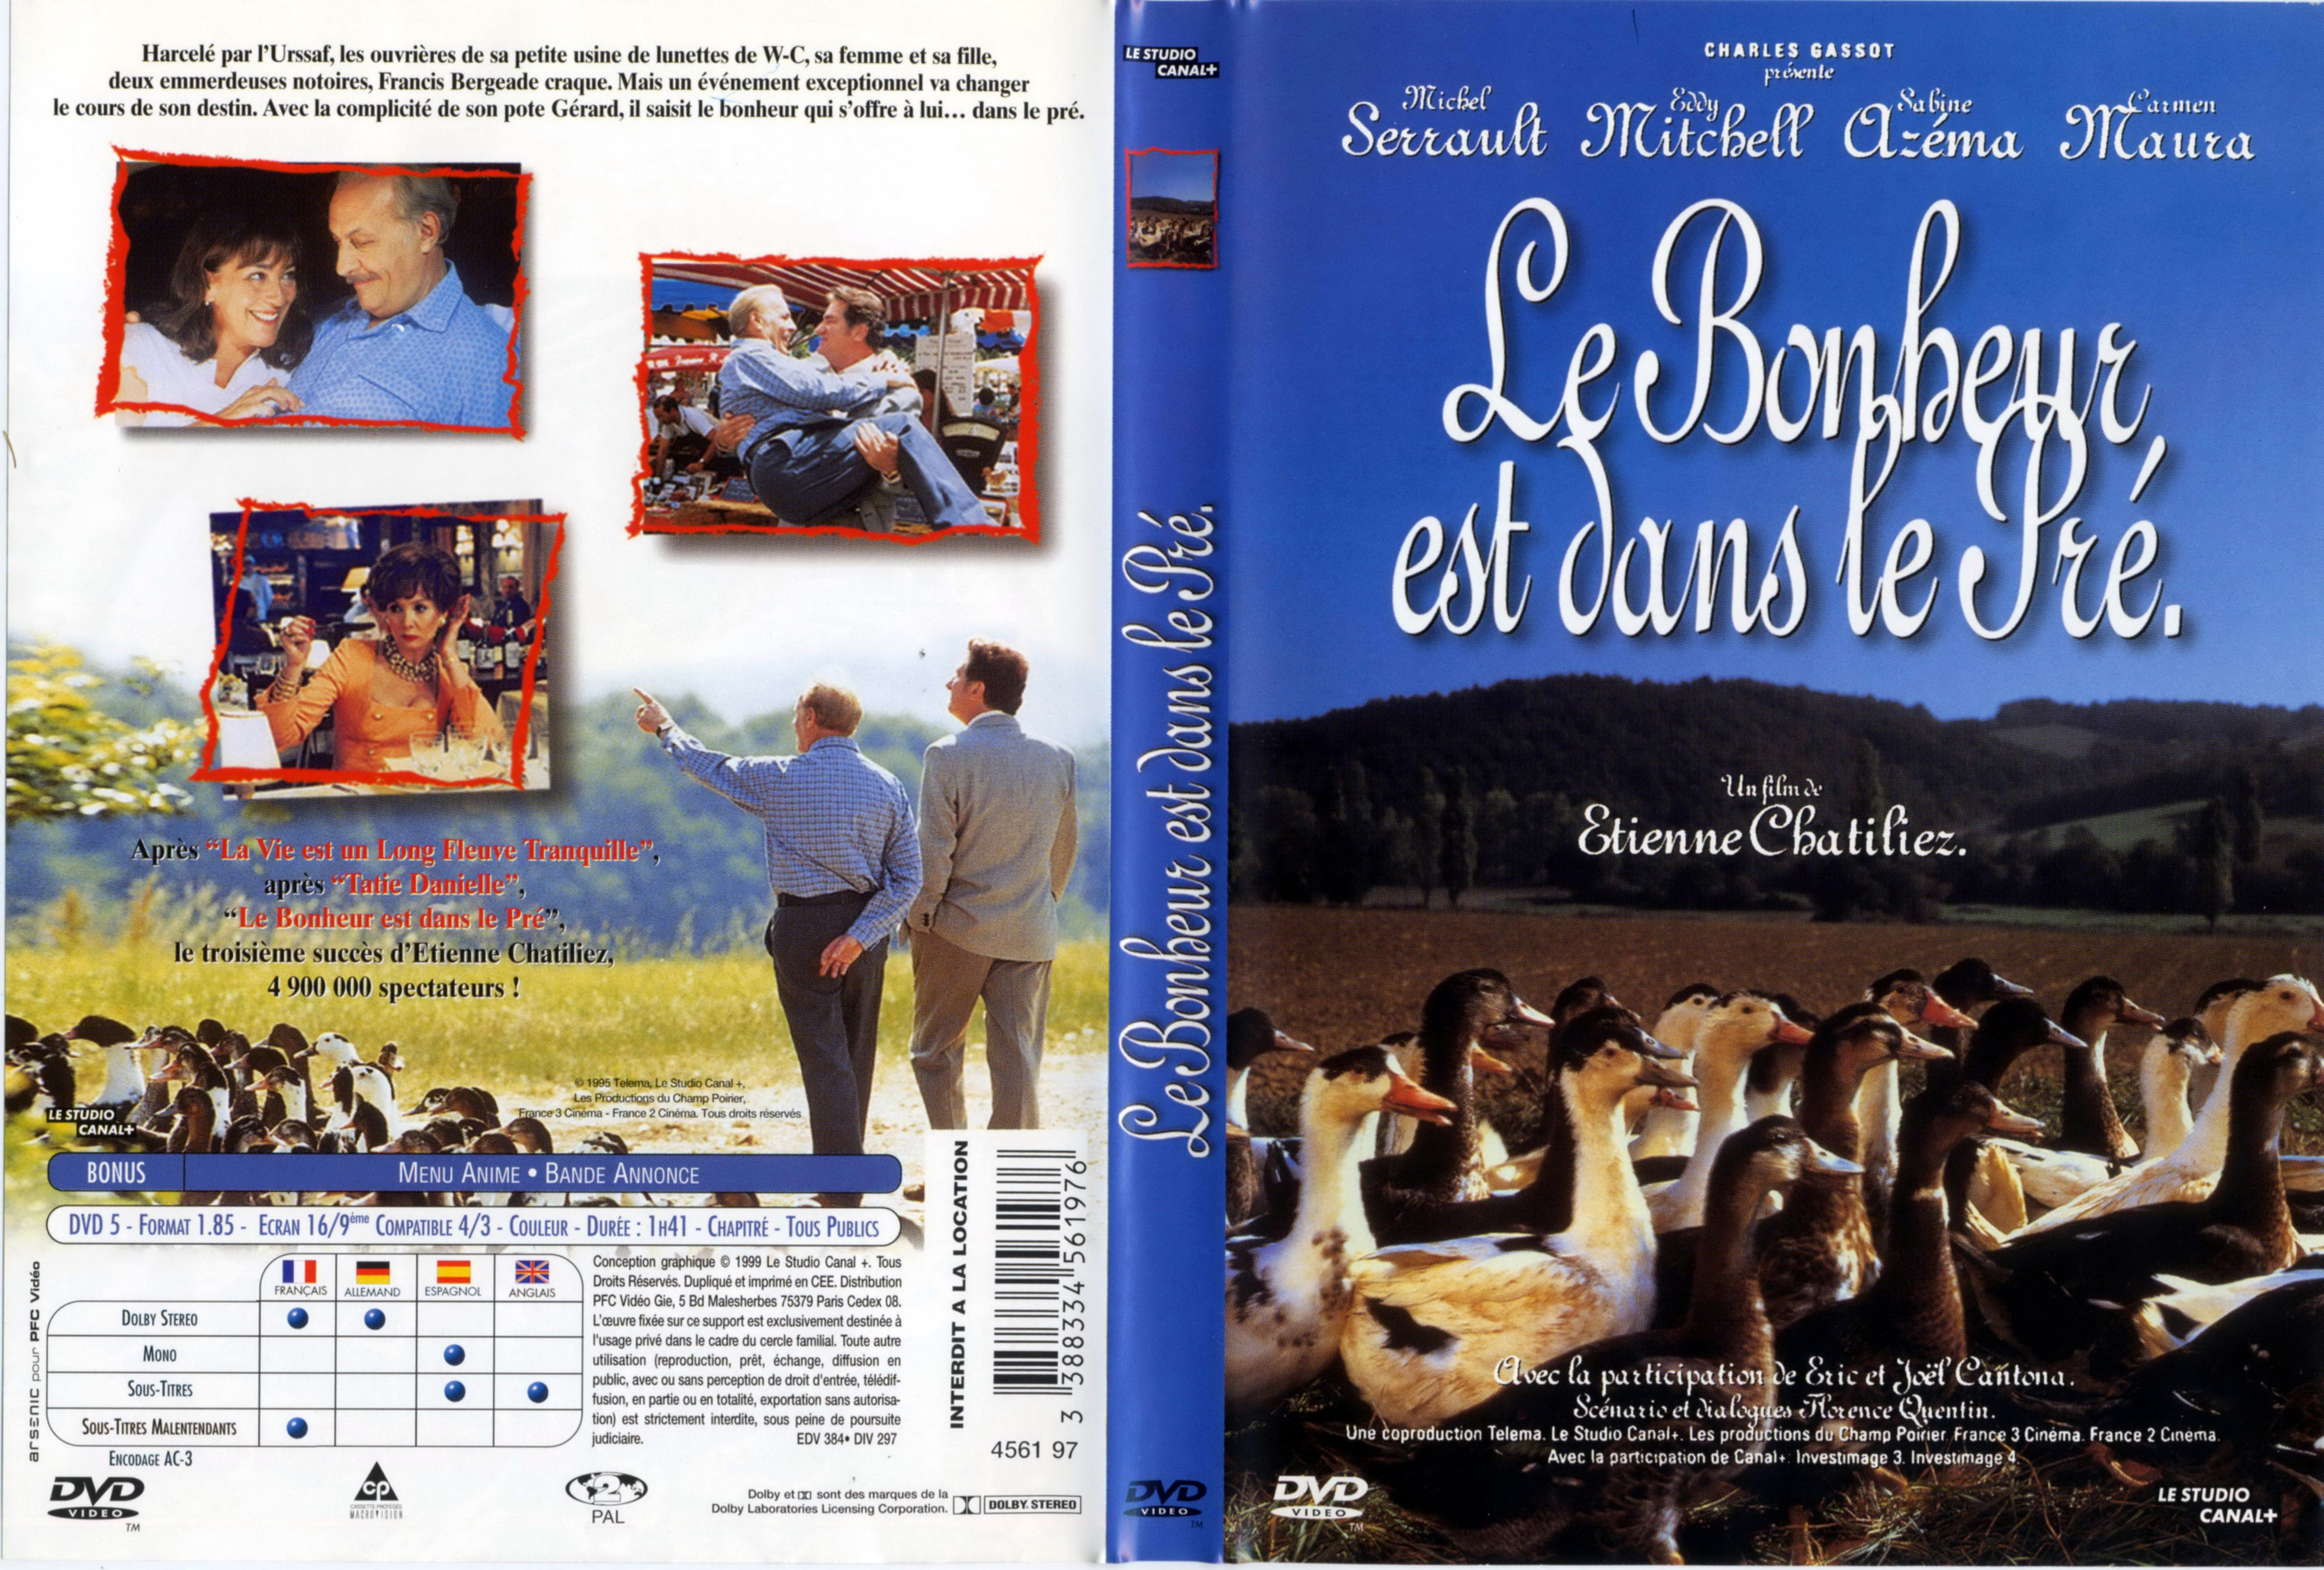 Jaquette DVD Le bonheur est dans le pr v2